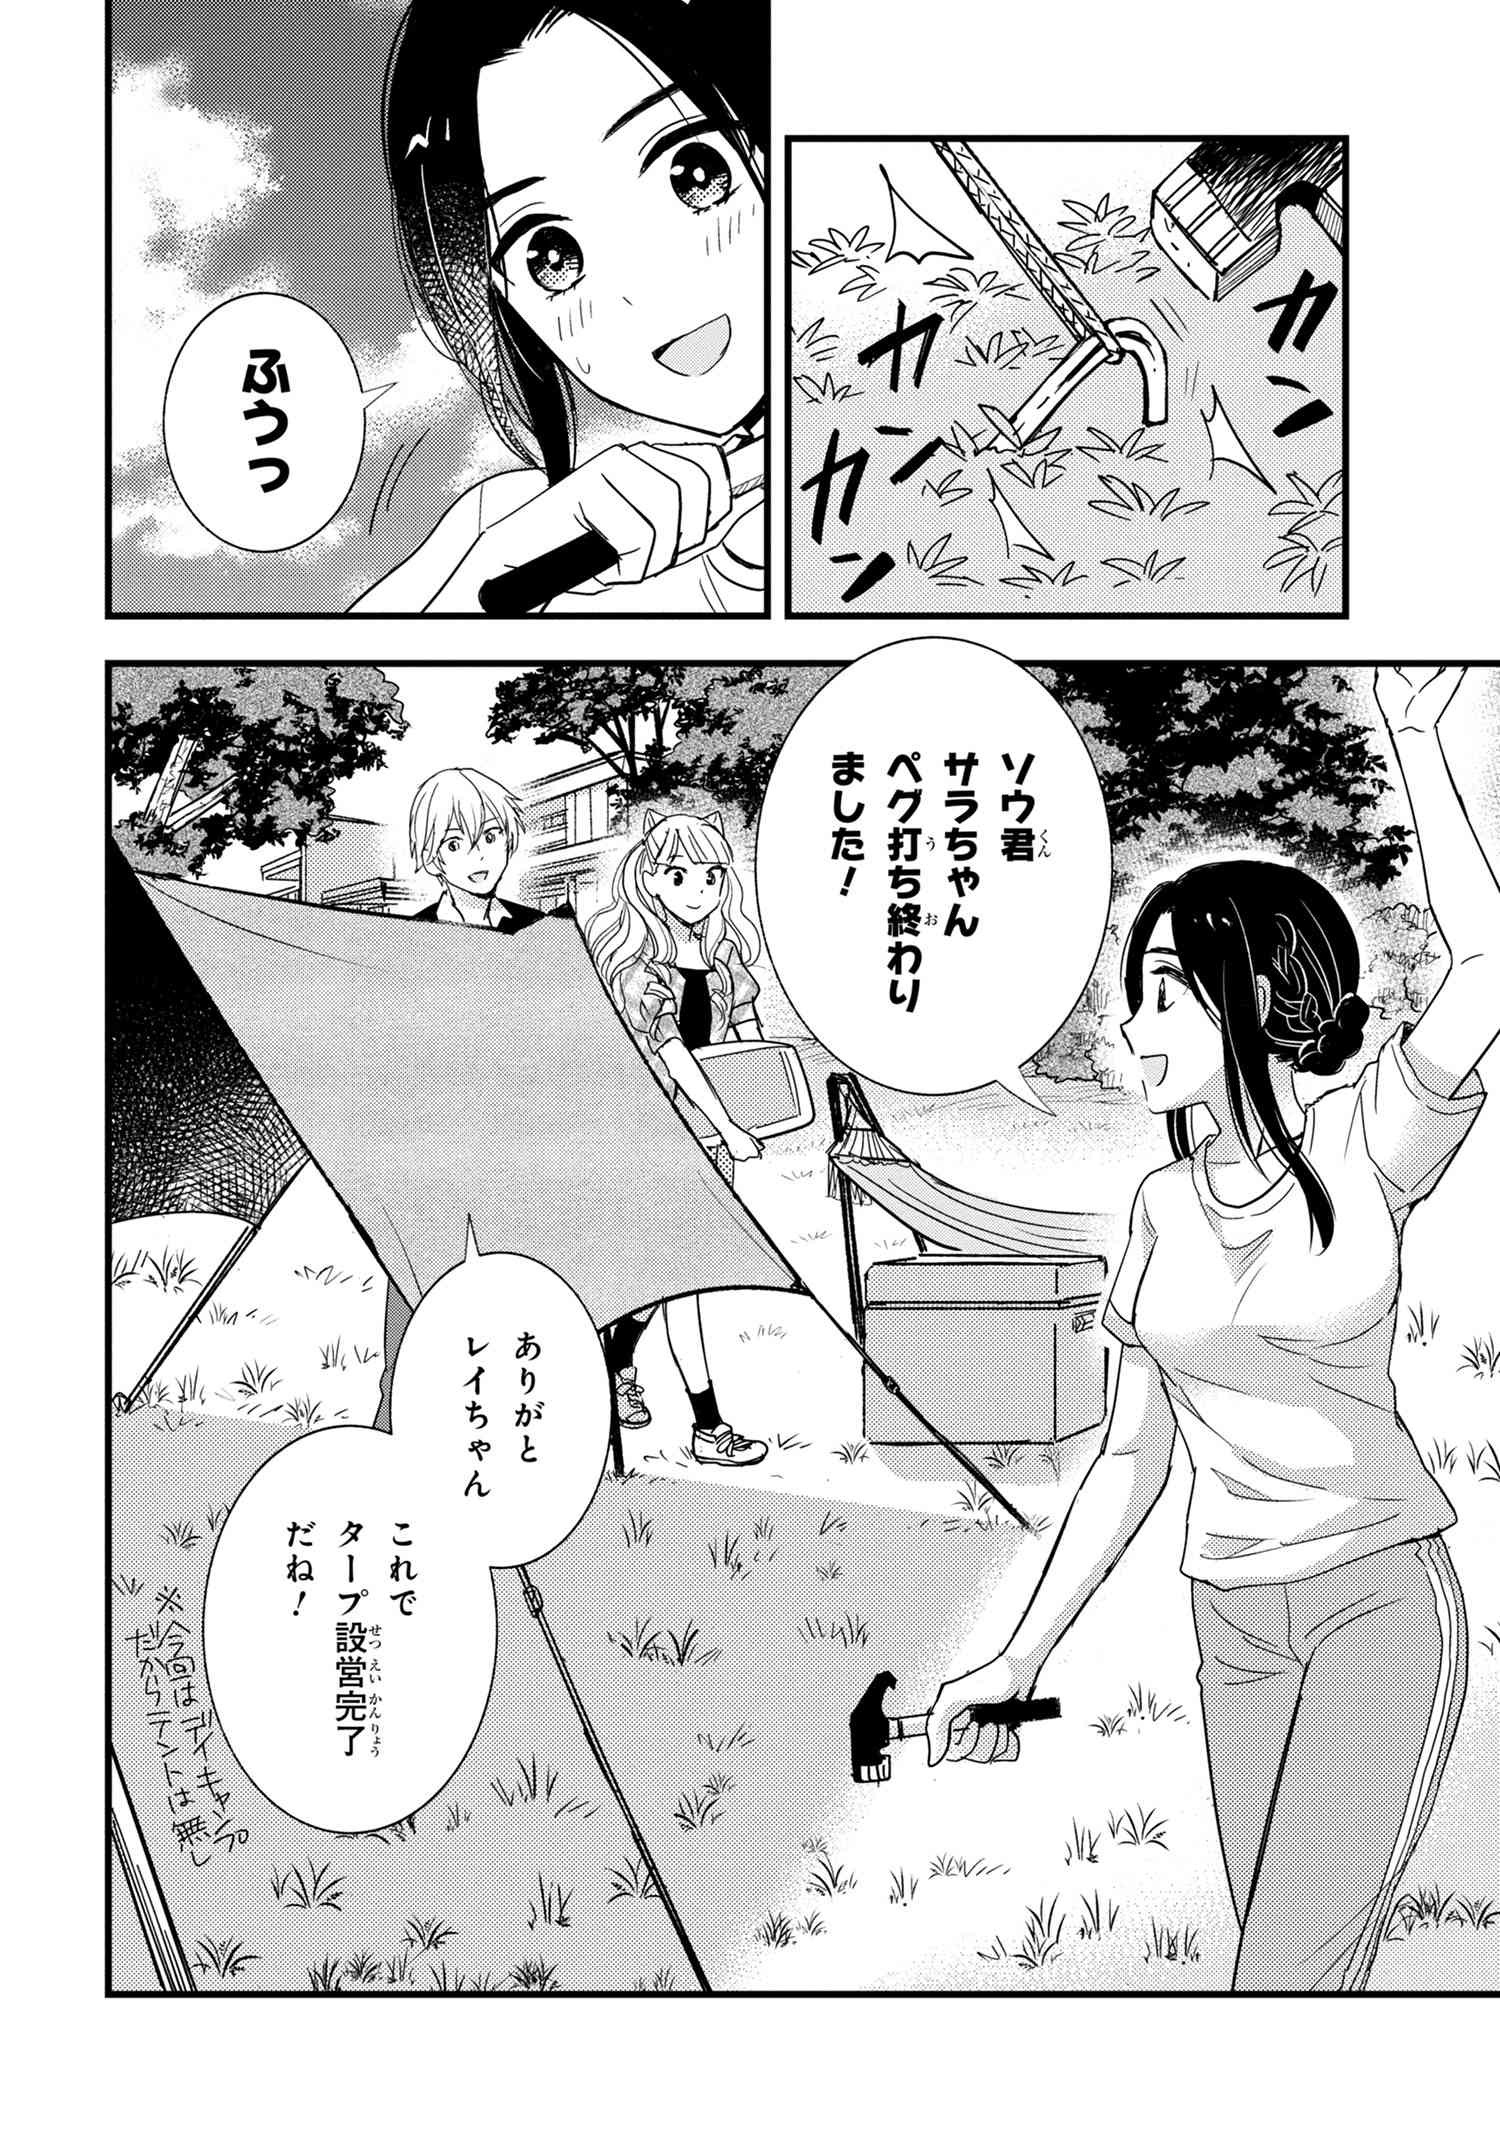 Reiko no Fuugi Akuyaku Reijou to Yobarete imasu ga, tada no Binbou Musume desu - Chapter 12.4 - Page 2